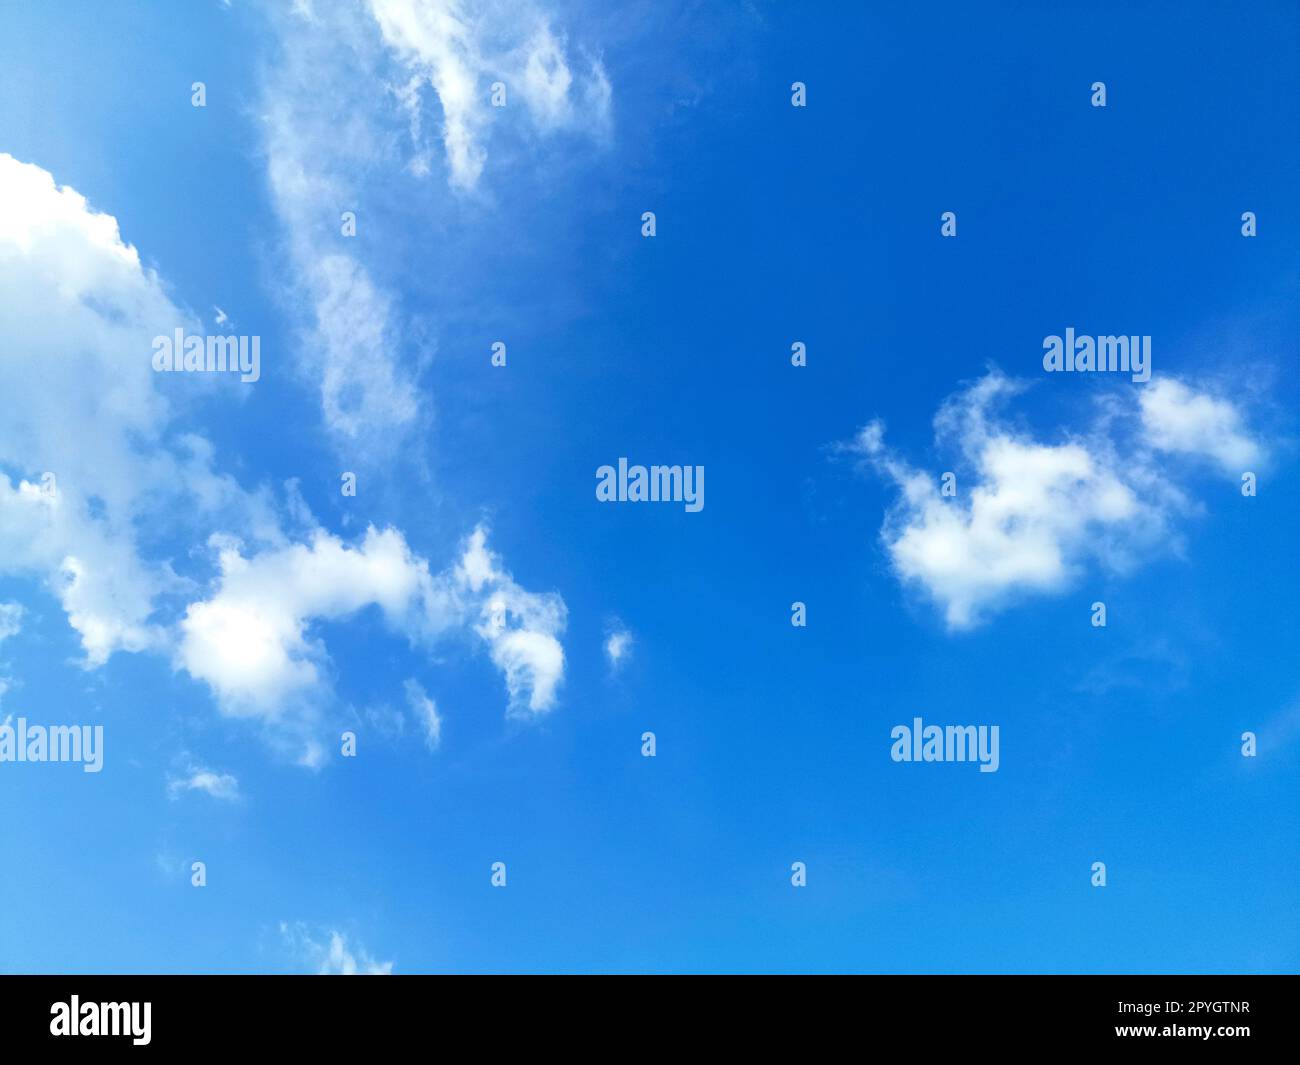 Weißer Himmel cloudâ andÂ beautifulâ blauer Himmel - Luftwolken blauem Himmel. - Blauer Hintergrund in der Luft Stockfoto